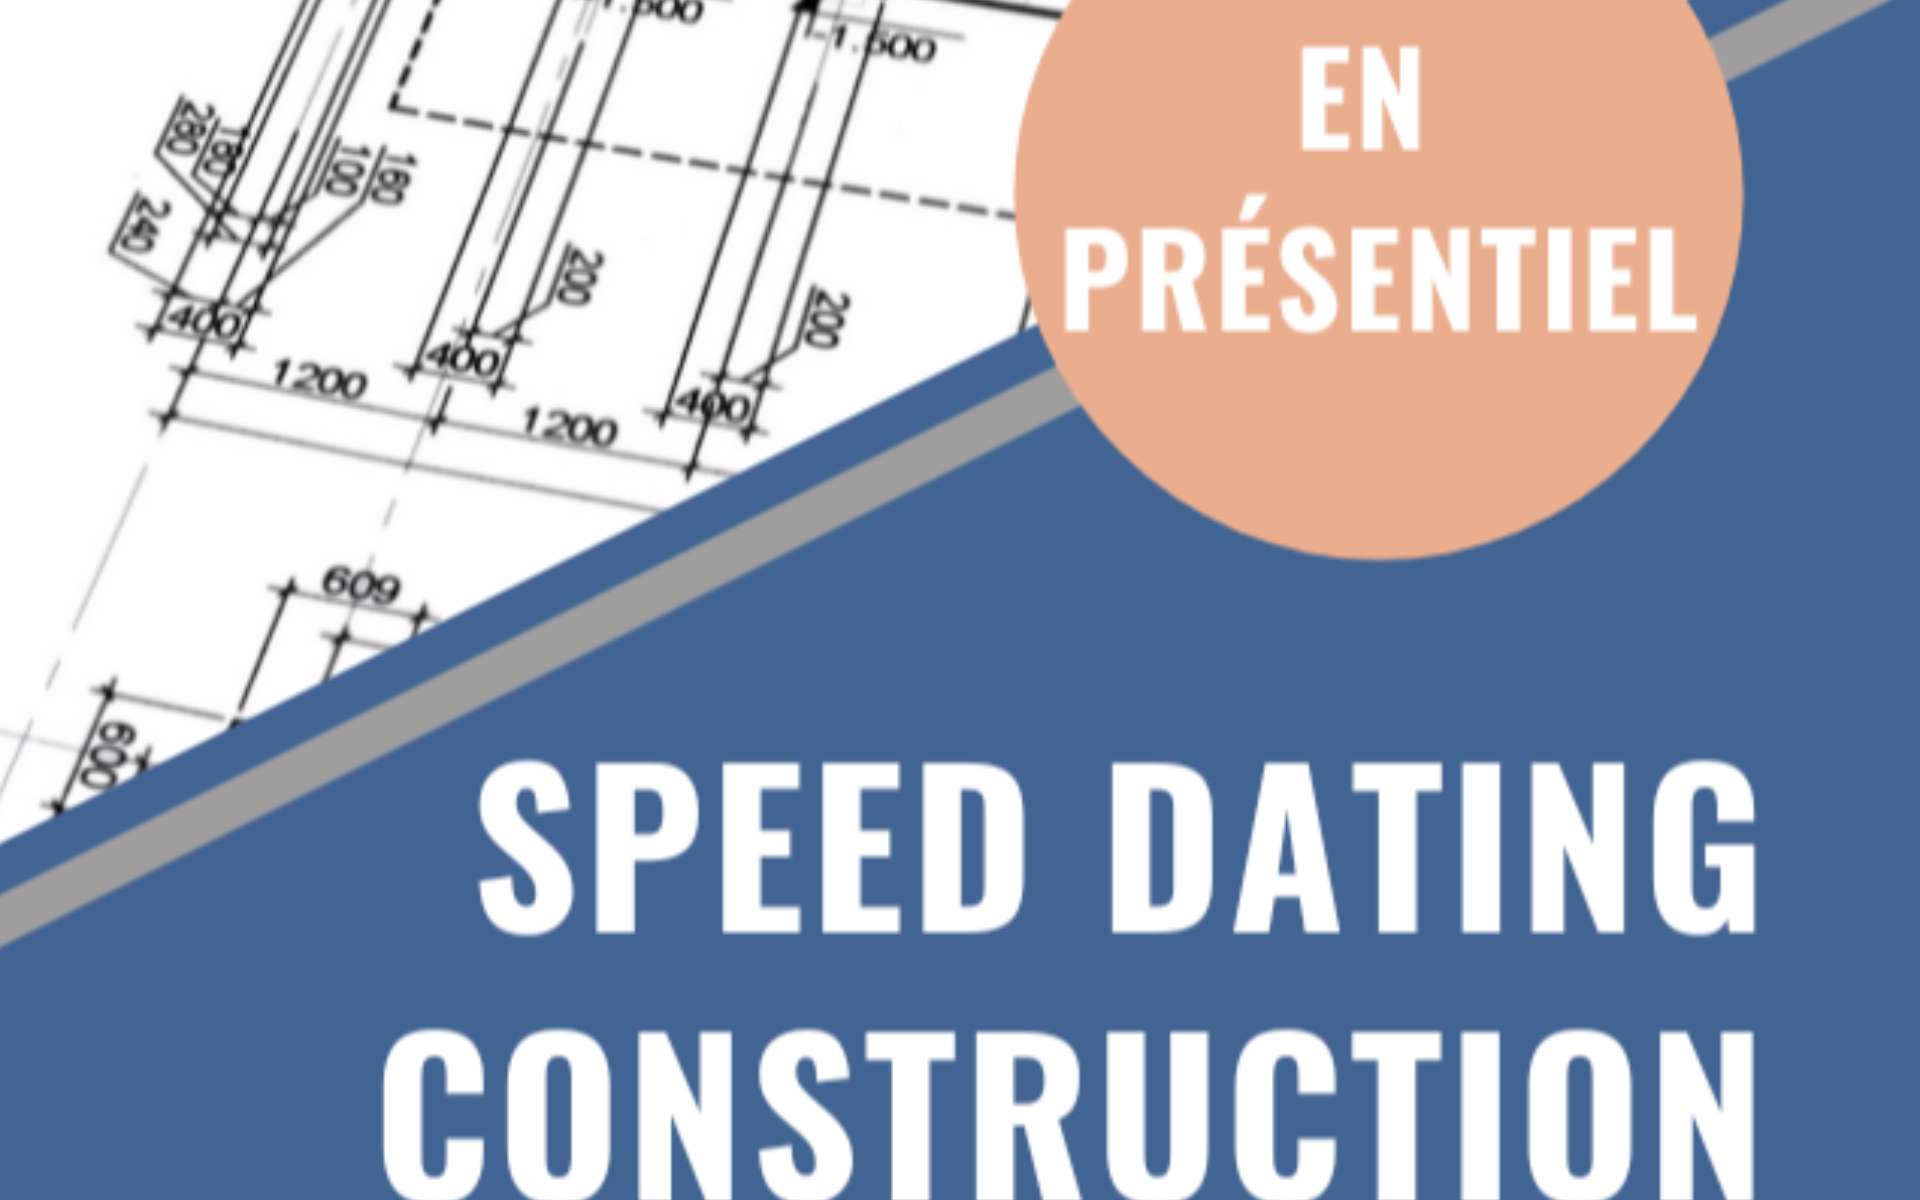 L'évènement Speed dating construction 2022 se déroulera le 28 septembre prochain à la HEPL